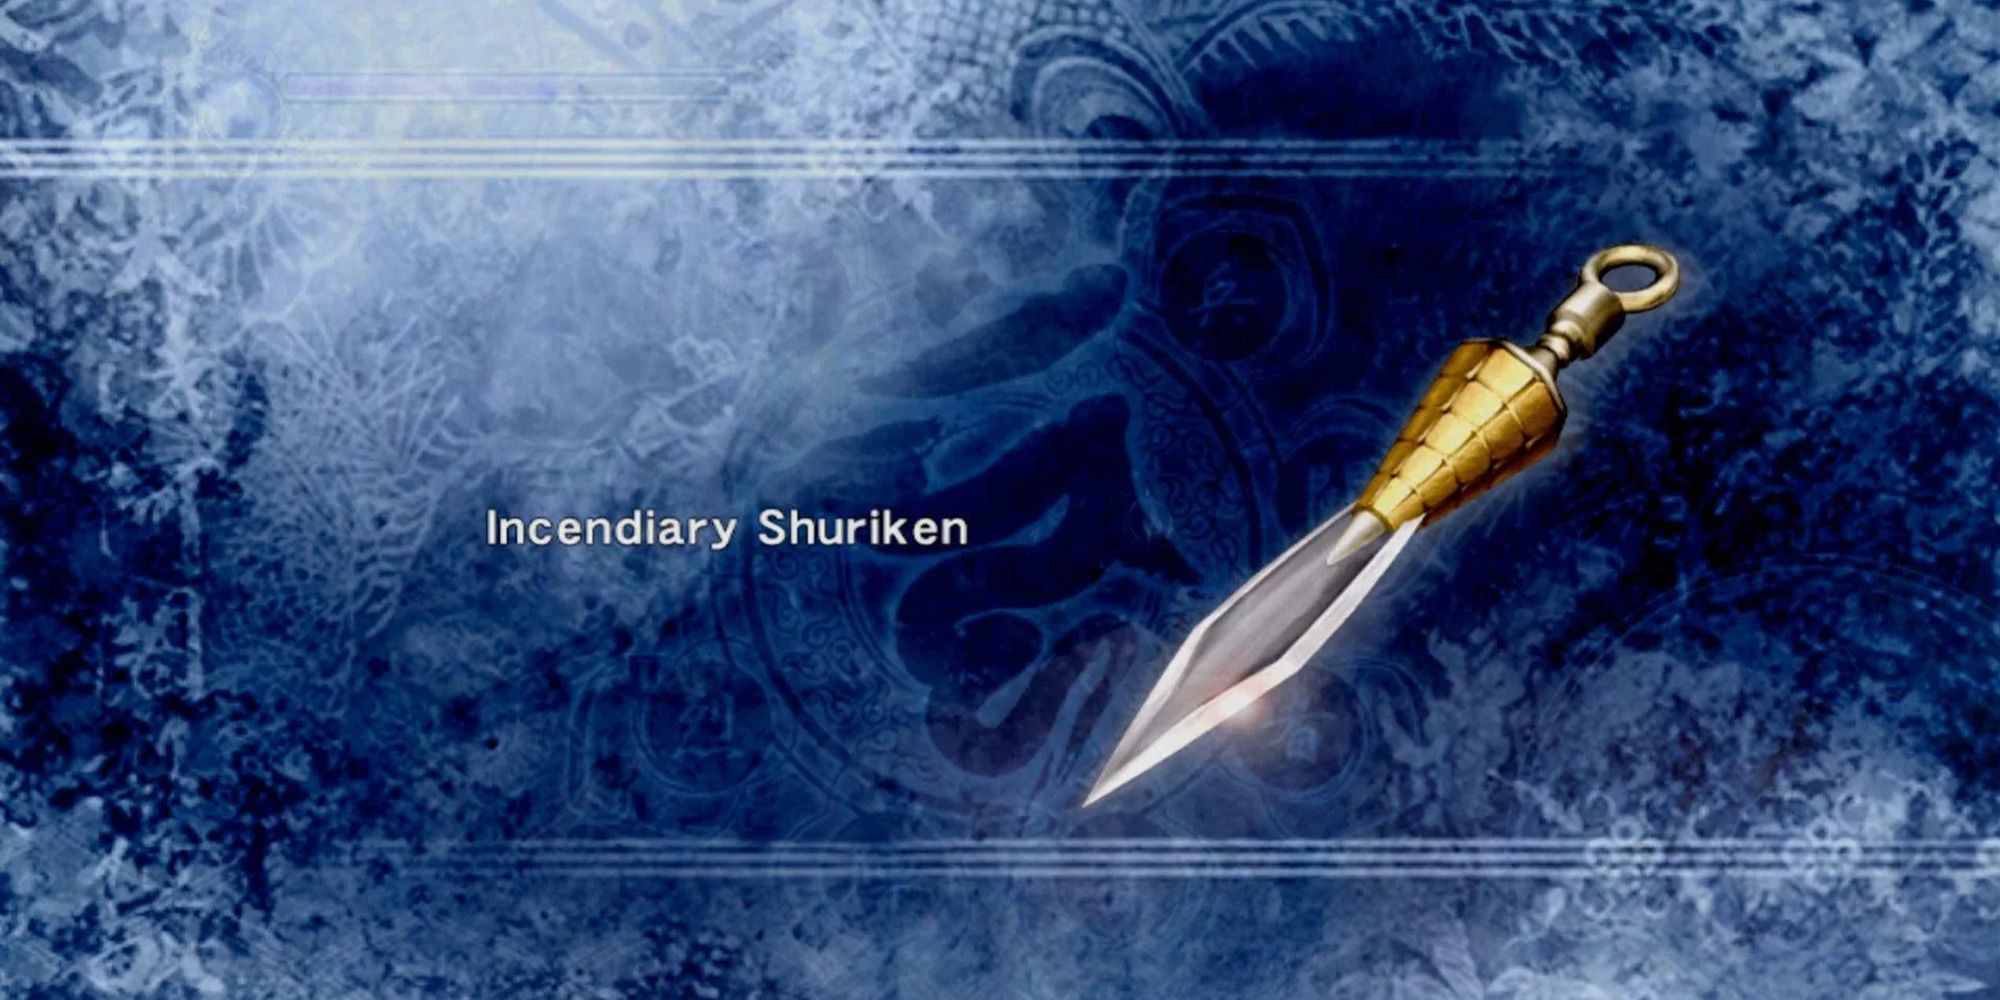 The Incendiary Shuriken Card